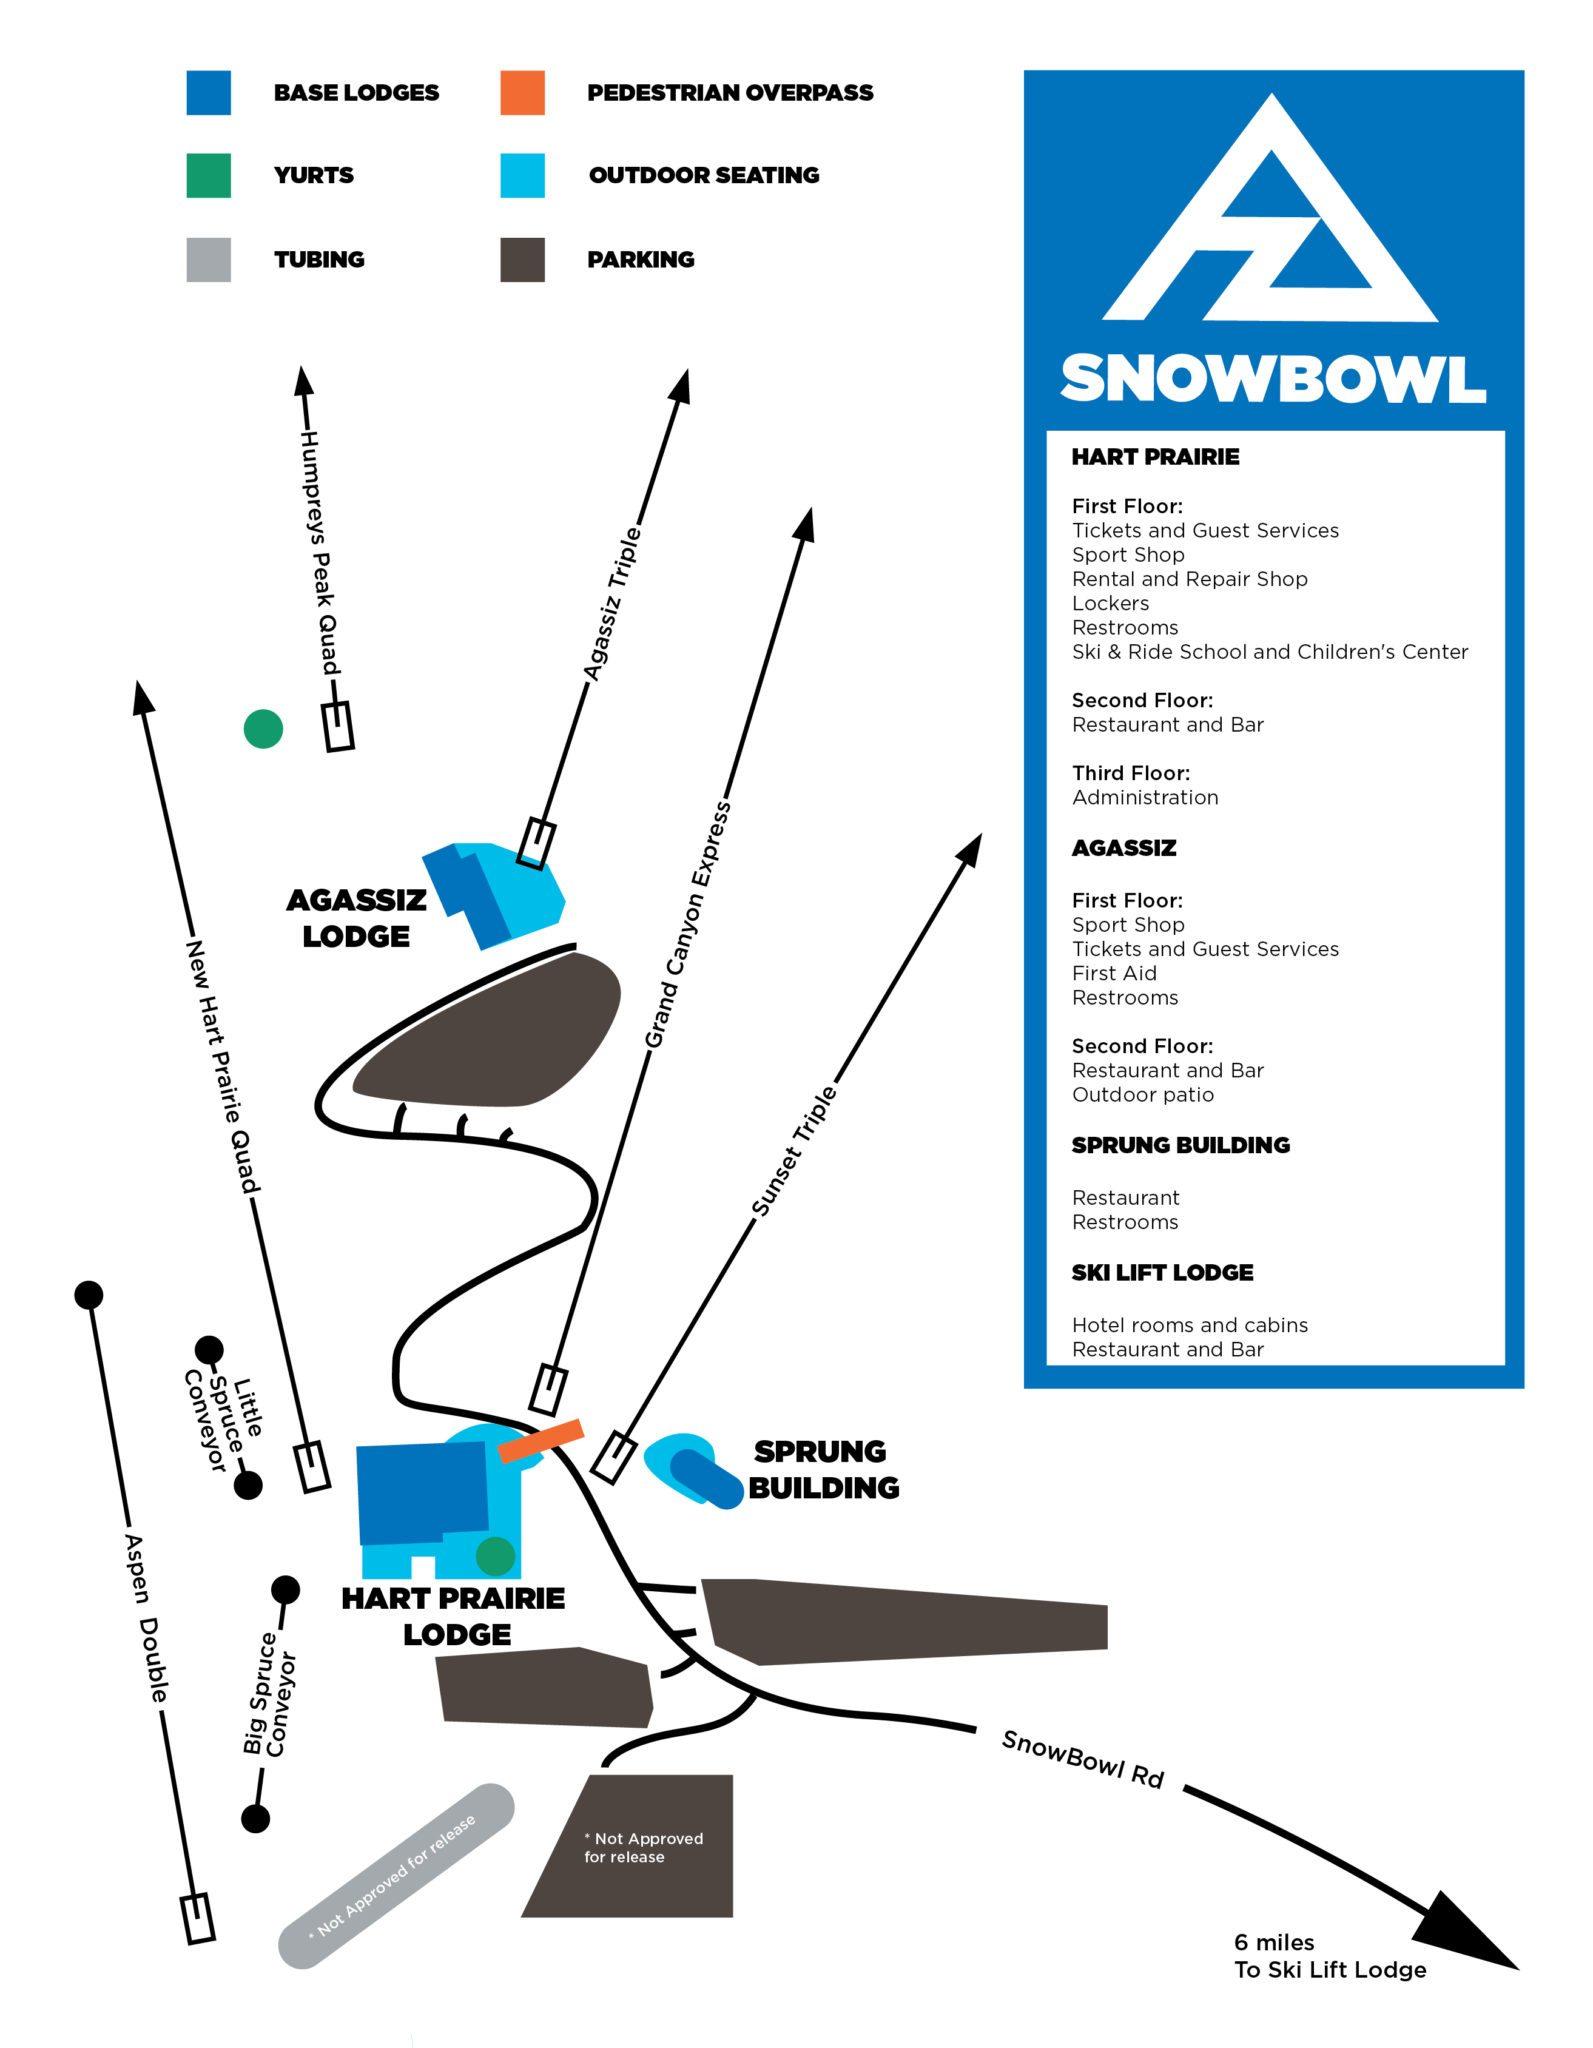 Snow Bowl Logo - Hart Prairie Sport Shop